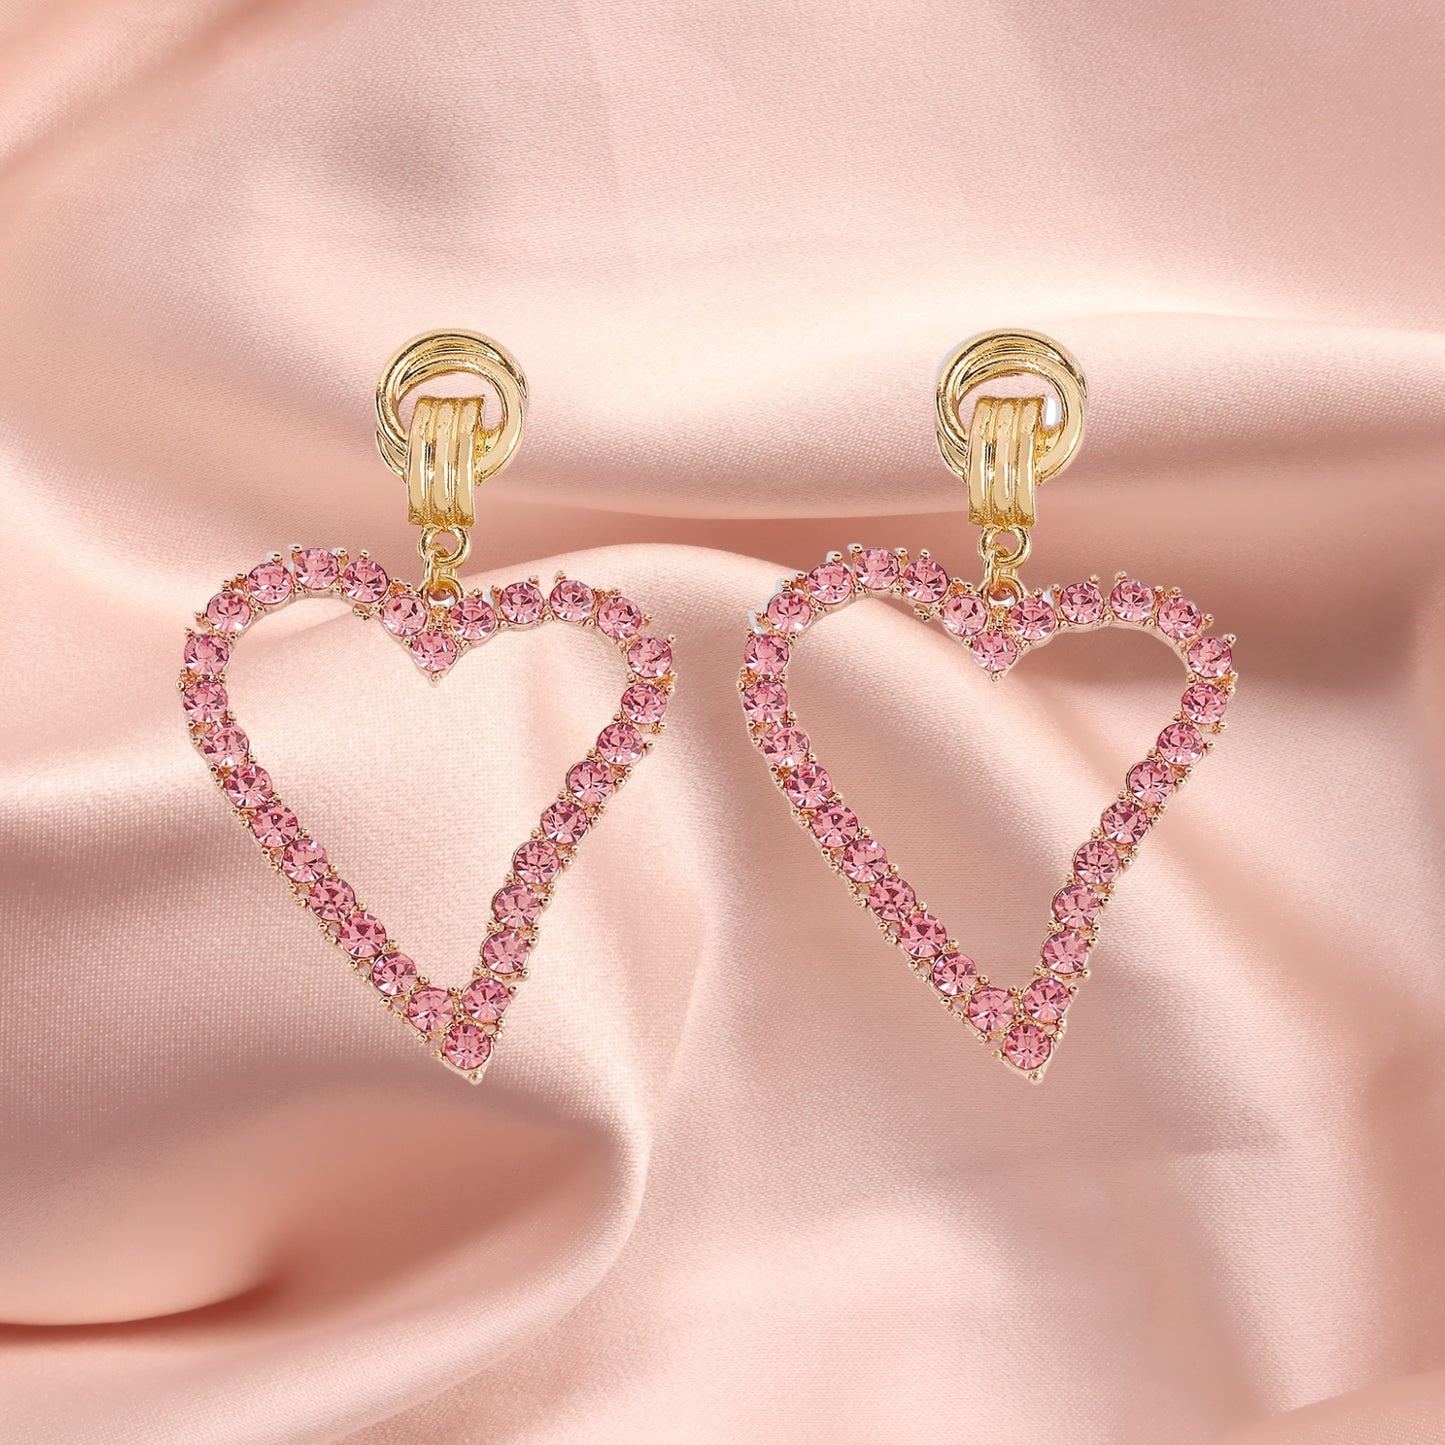 Rhinestones Hoop Earrings Big Heart Crystal Hoop Earrings Rhinestones Bridal Drop Dangle Earrings Statement Body Jewelry for Women